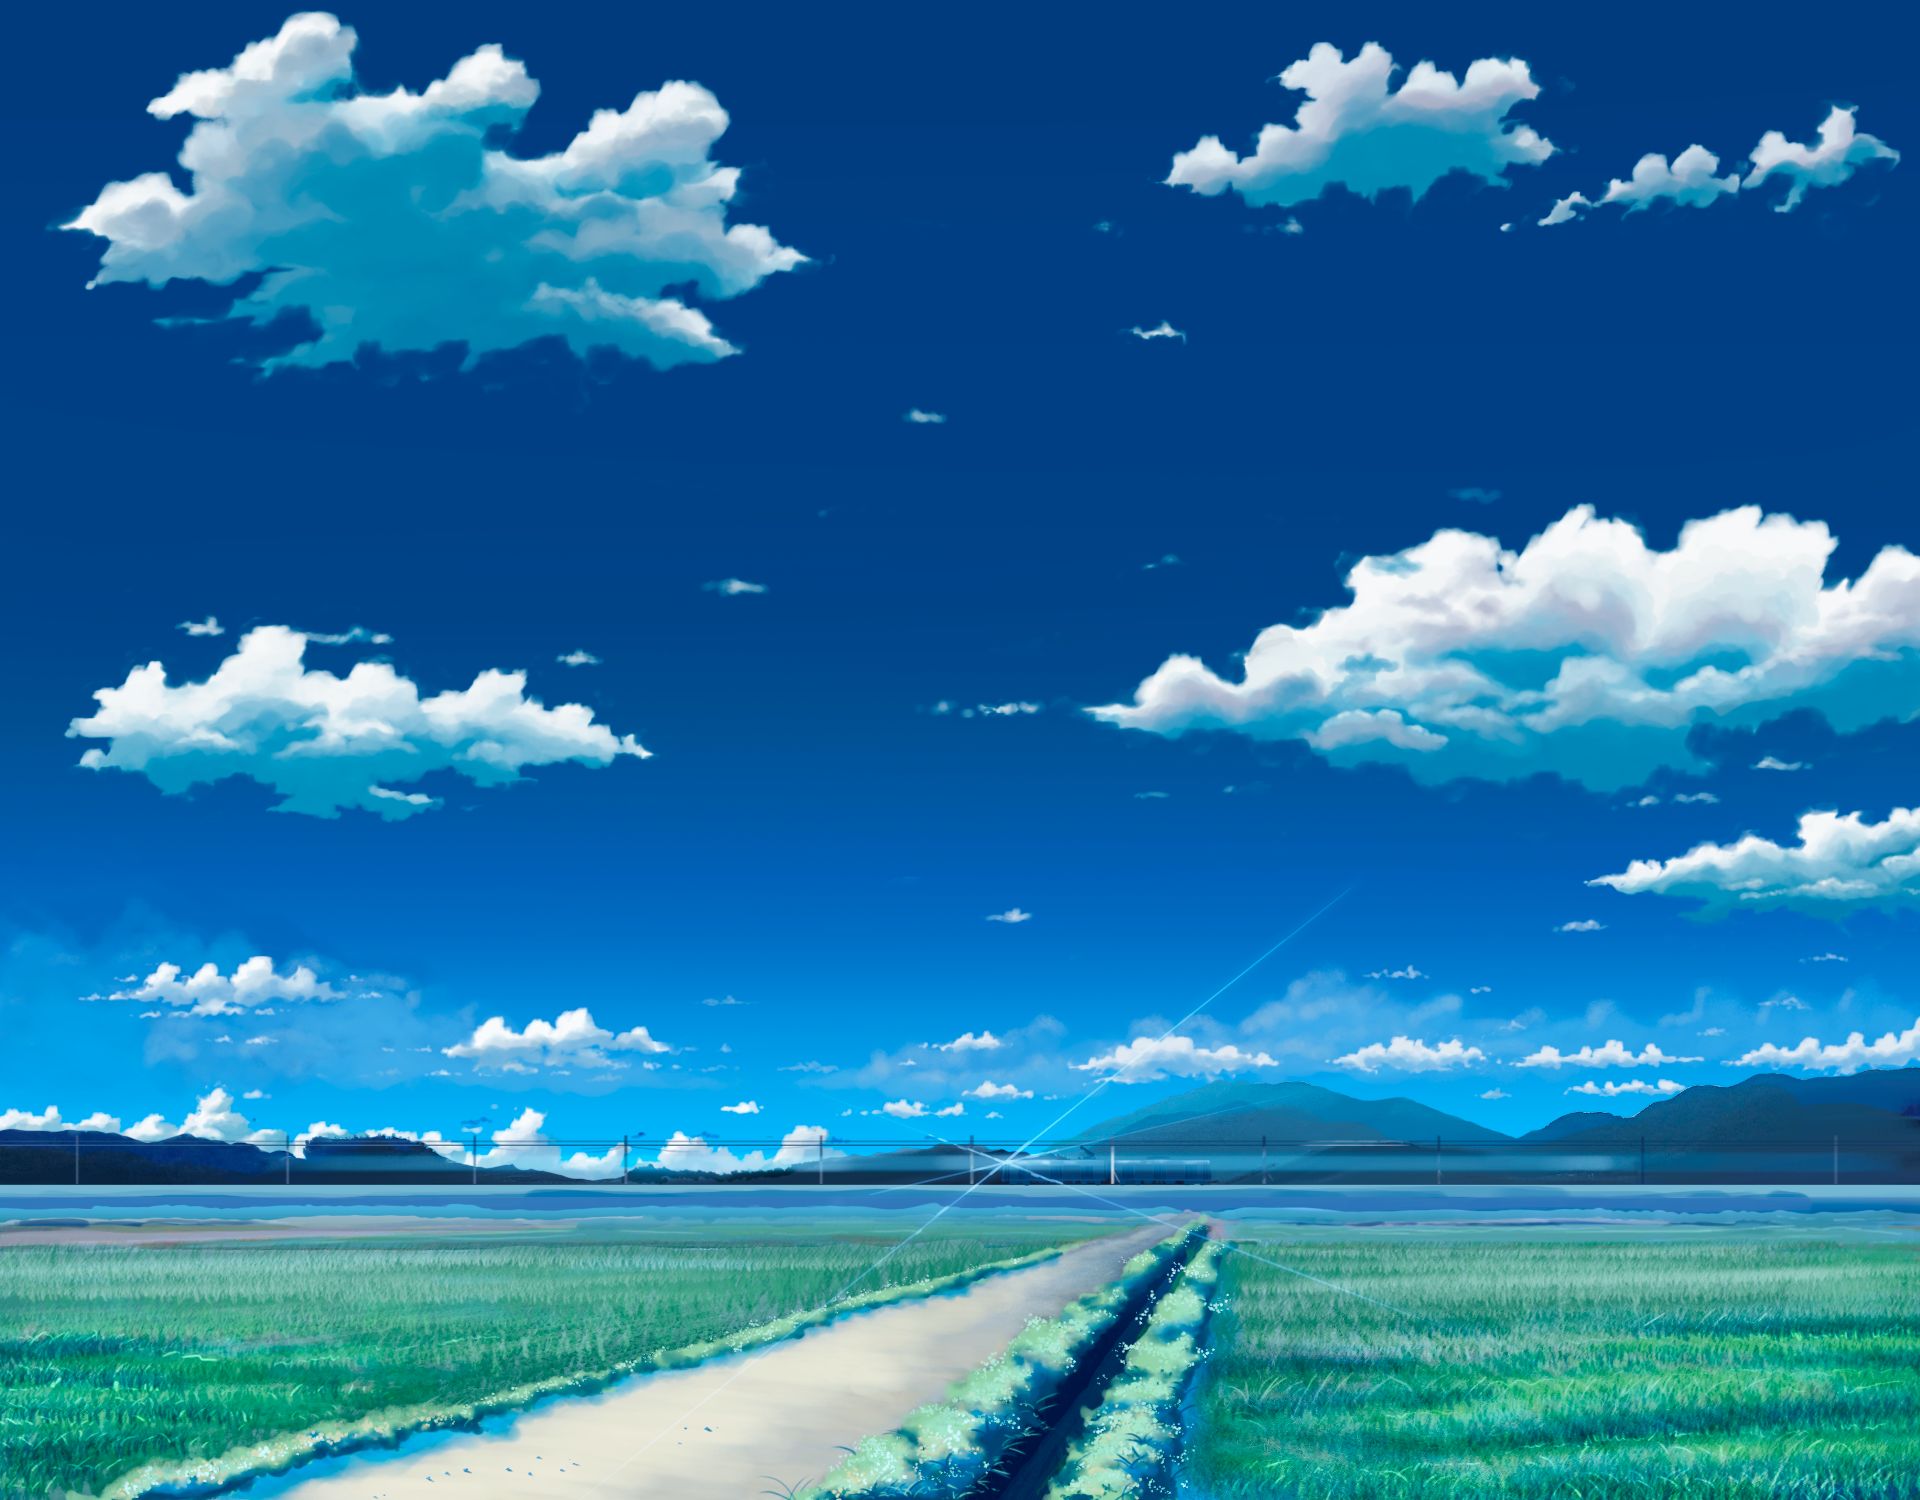 Обои аниме пейзаж